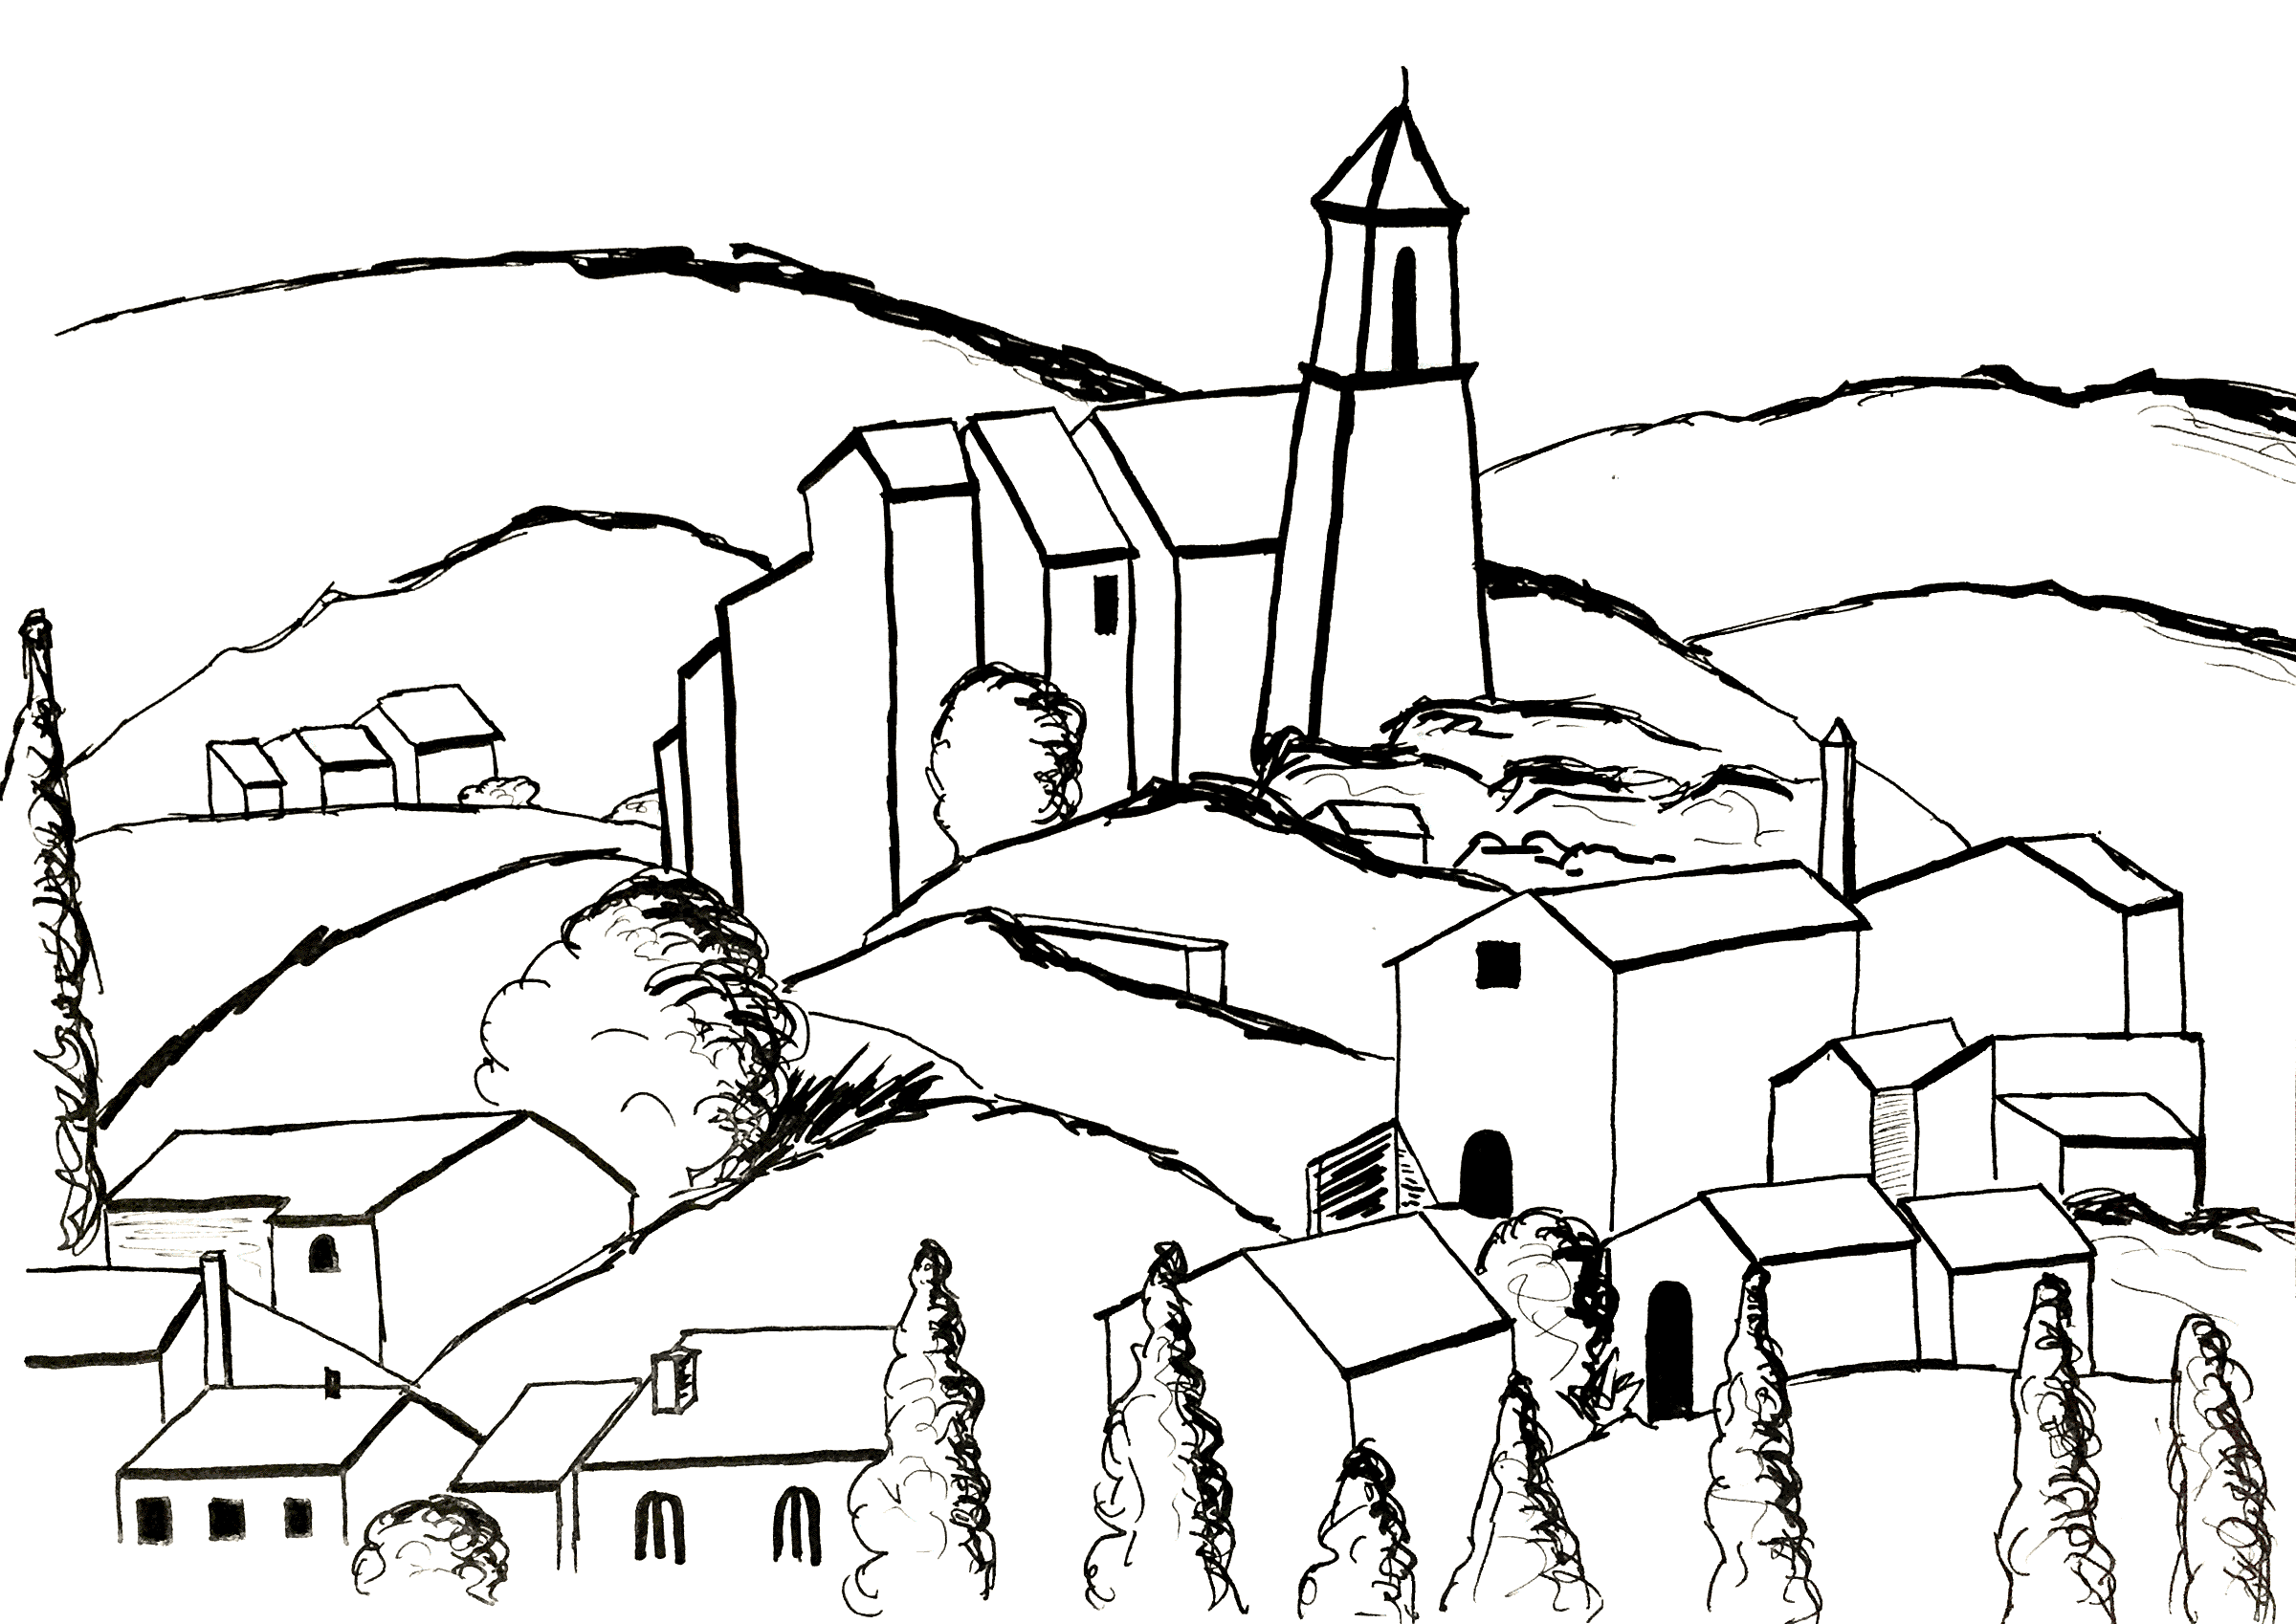 Página para colorir inspirada num quadro de Paul Cézanne: Gardanne (versão 2). Gardanne, uma aldeia situada em França, na região de Provence-Alpes-Côte d'Azur, é a única aldeia pintada por Cézanne.